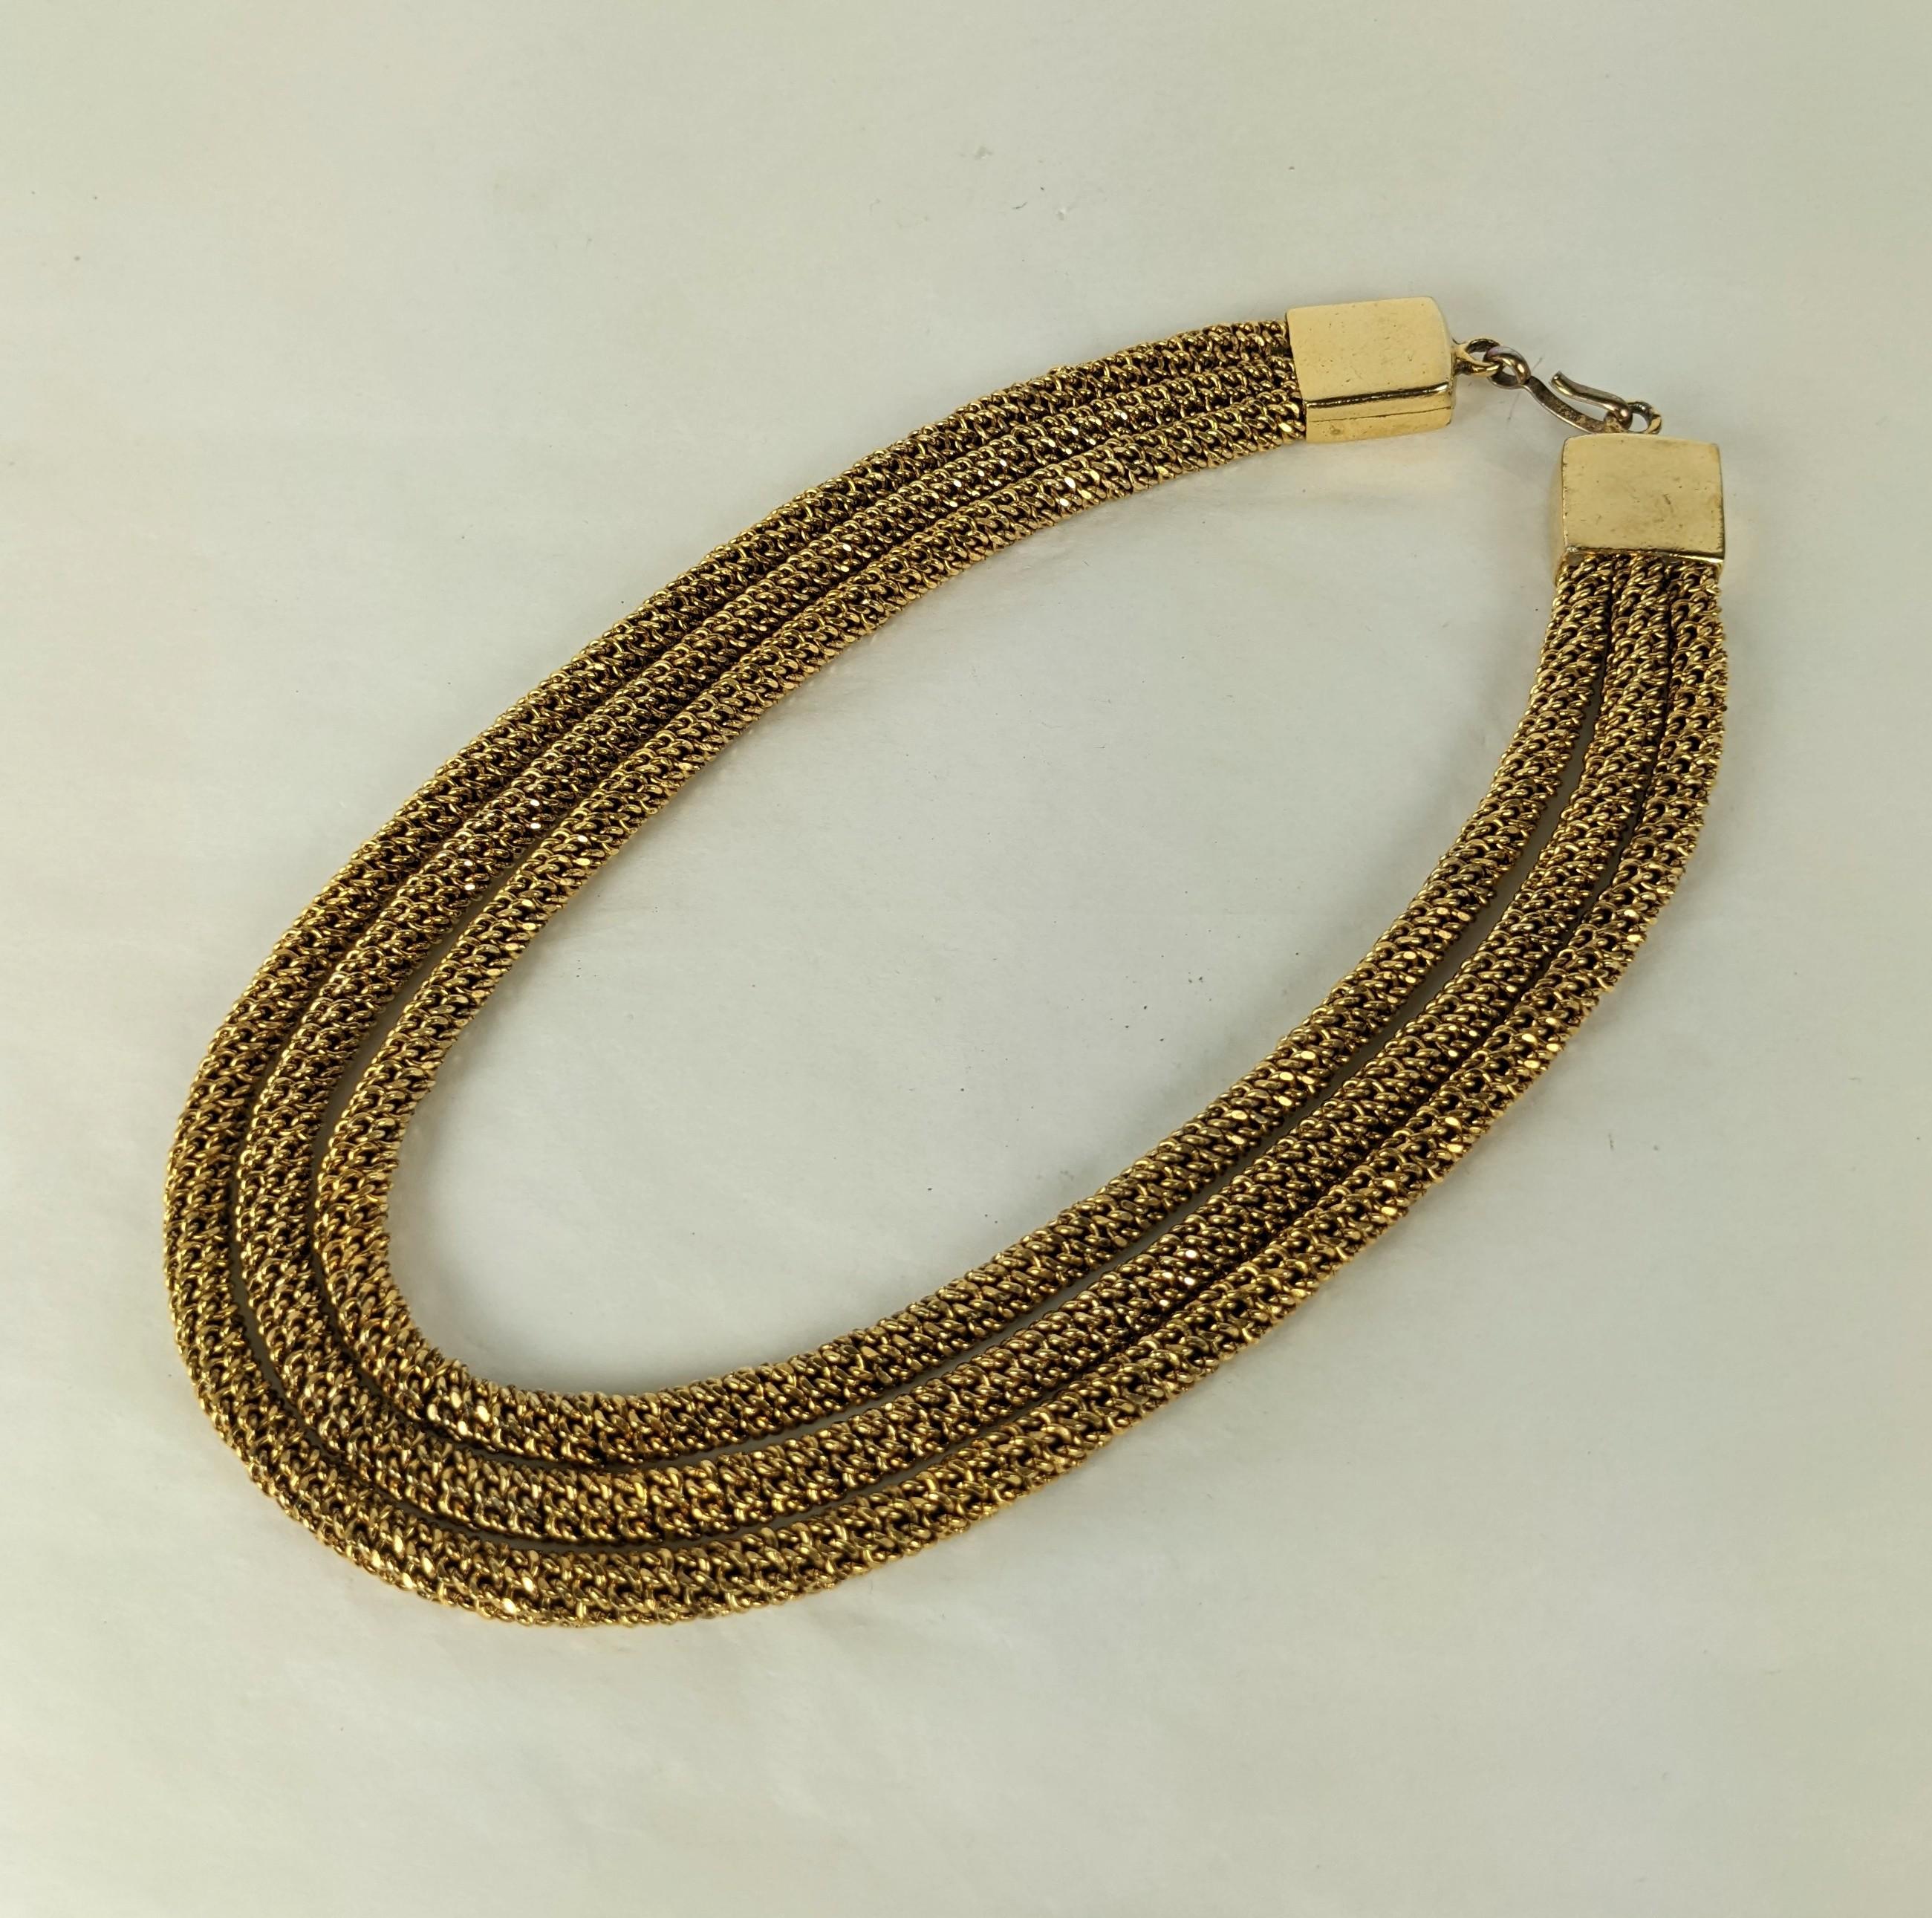 Ungewöhnliche französische Ketten-Multistrand-Halskette, bestehend aus 3 